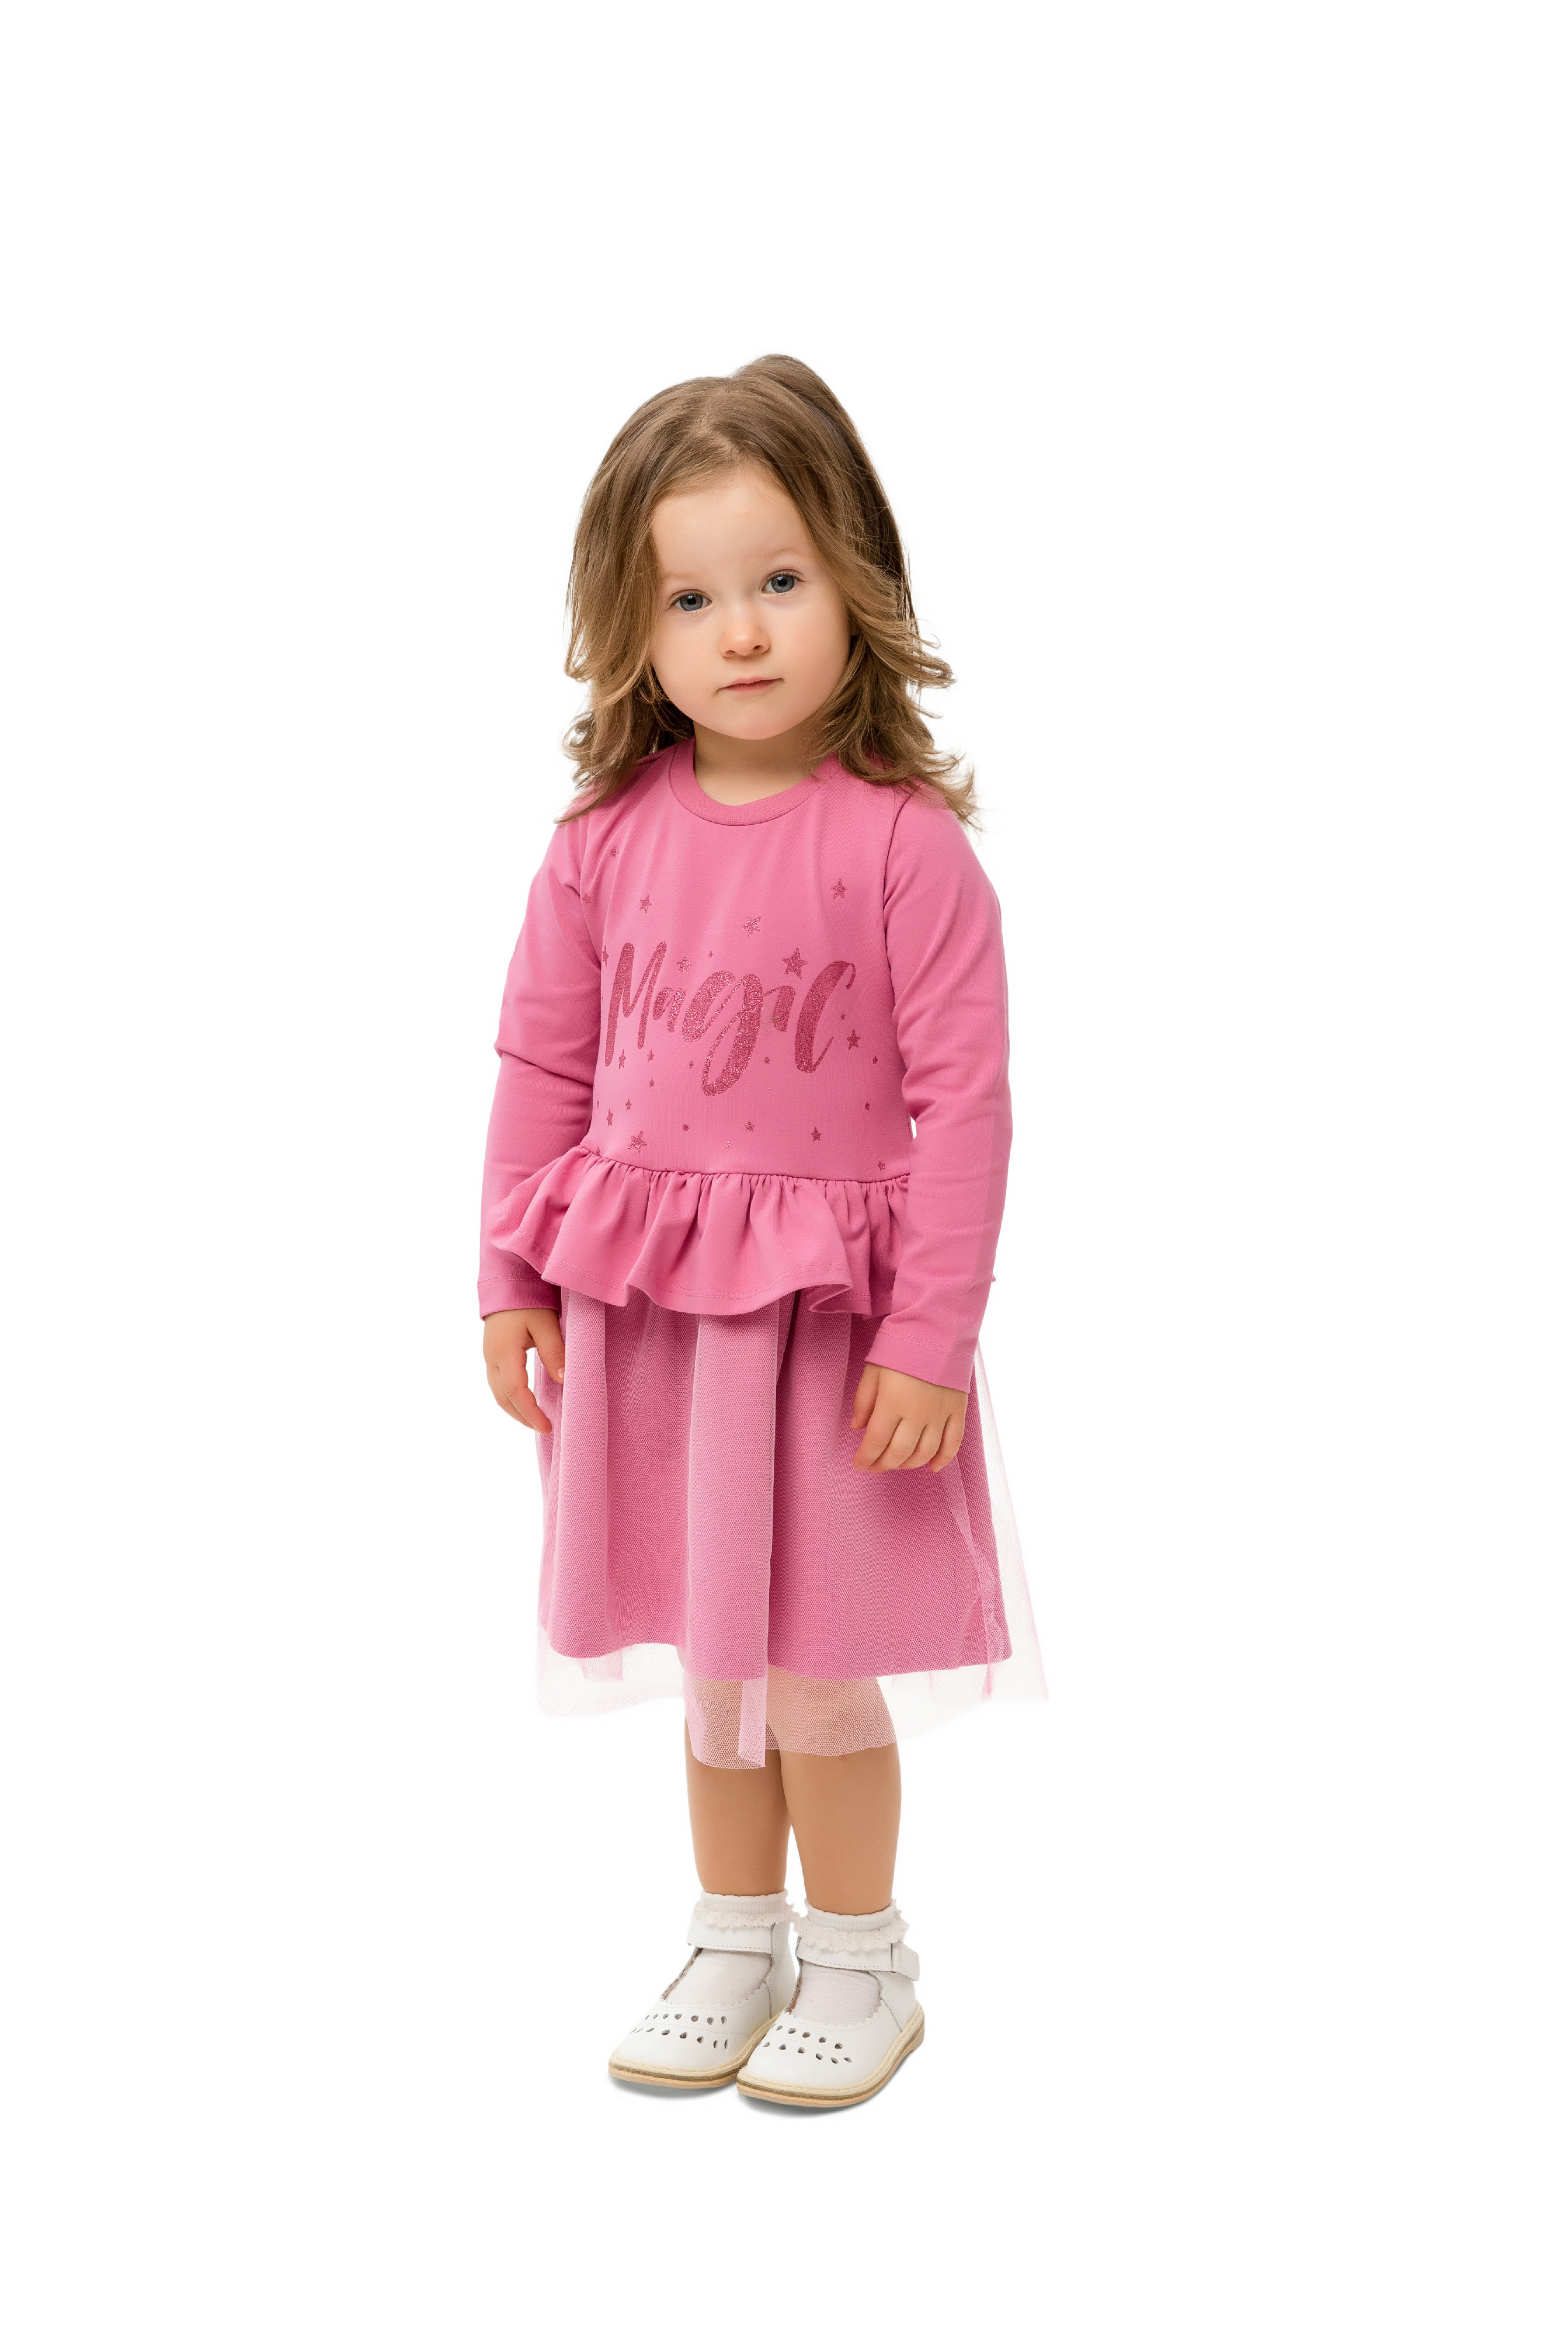 Dívčí šaty - WINKIKI WKG 92555, růžová Barva: Růžová, Velikost: 98